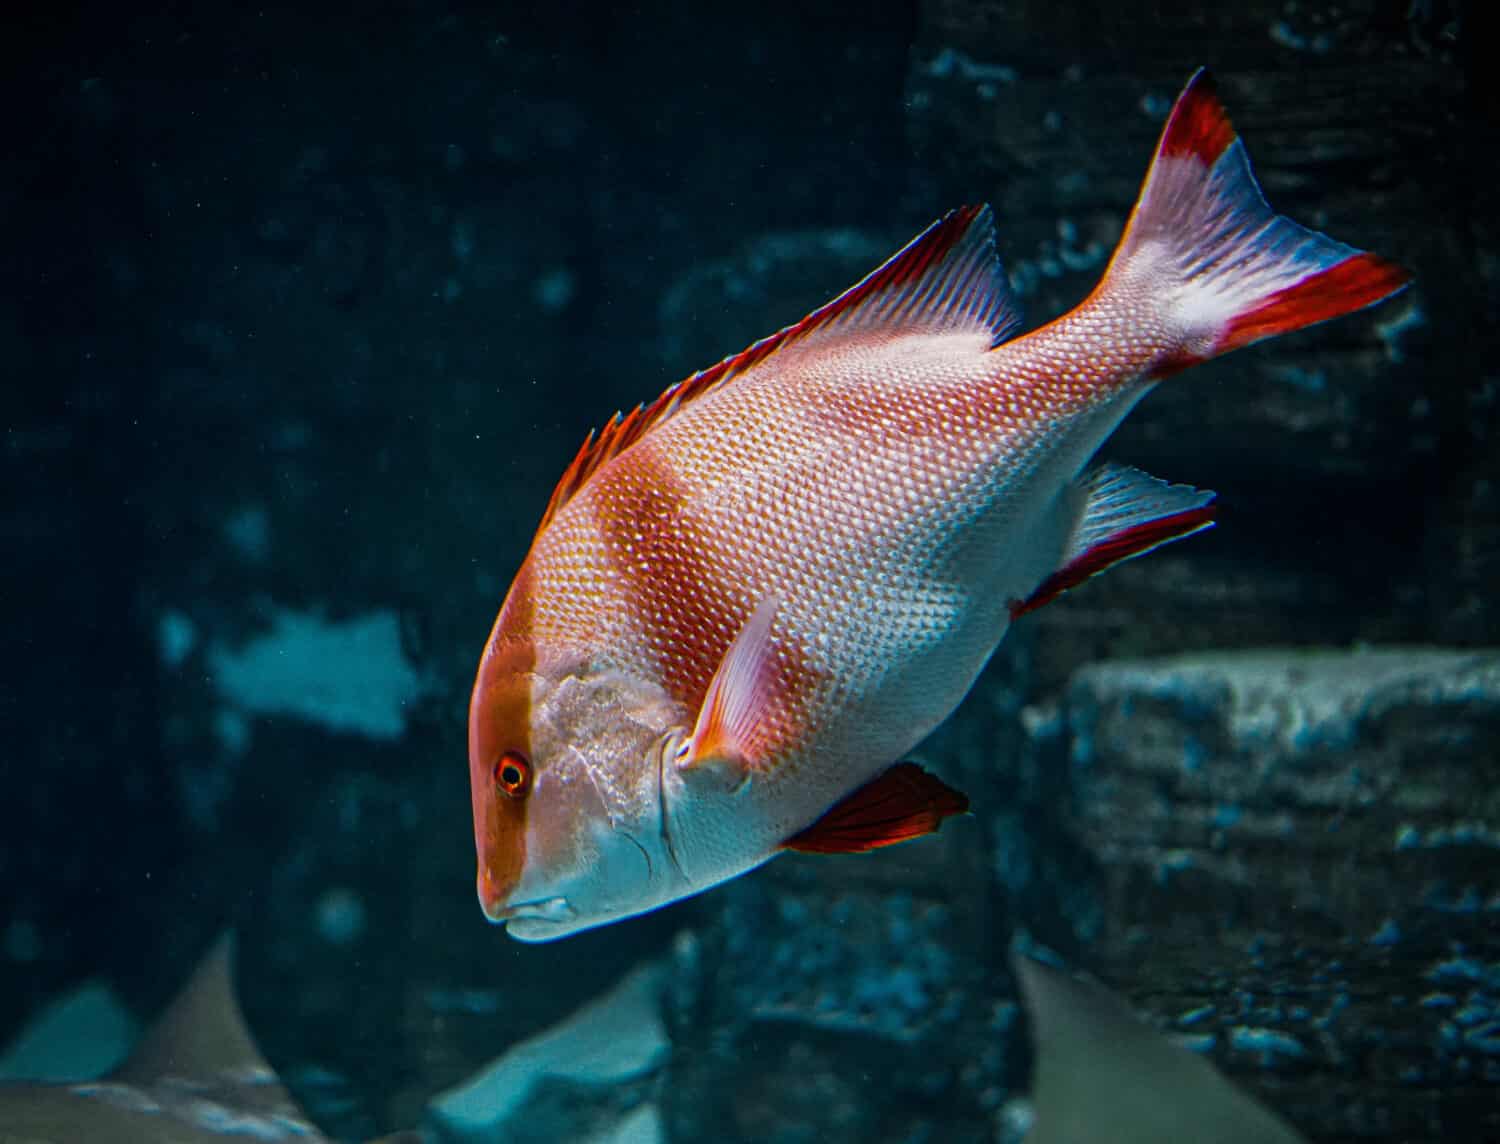 A closeup shot of a Snapper fish swimming in the aquarium